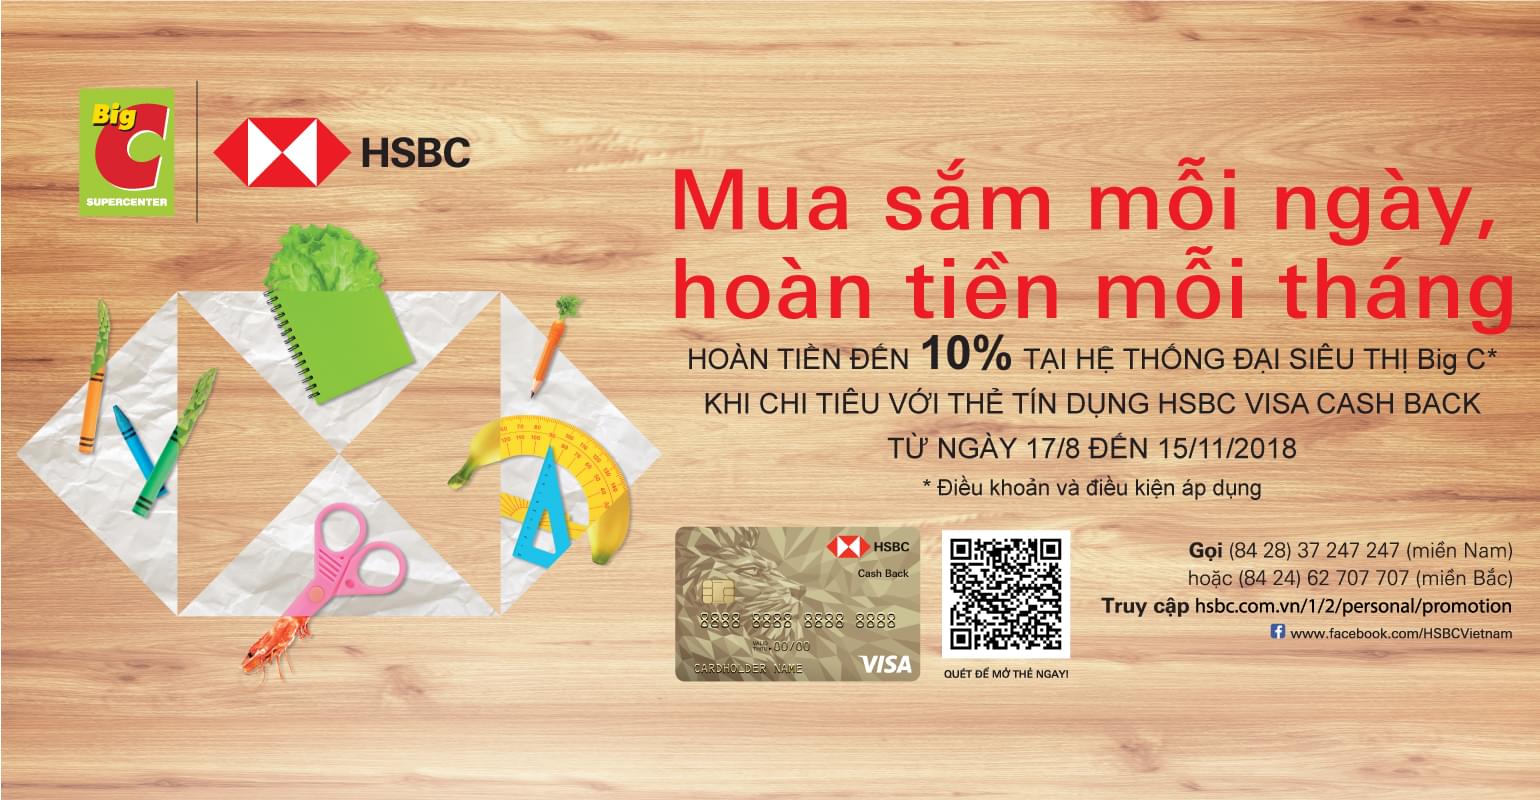 Cash back offer at Big C with HSBC Visa Cash Back Credit Card